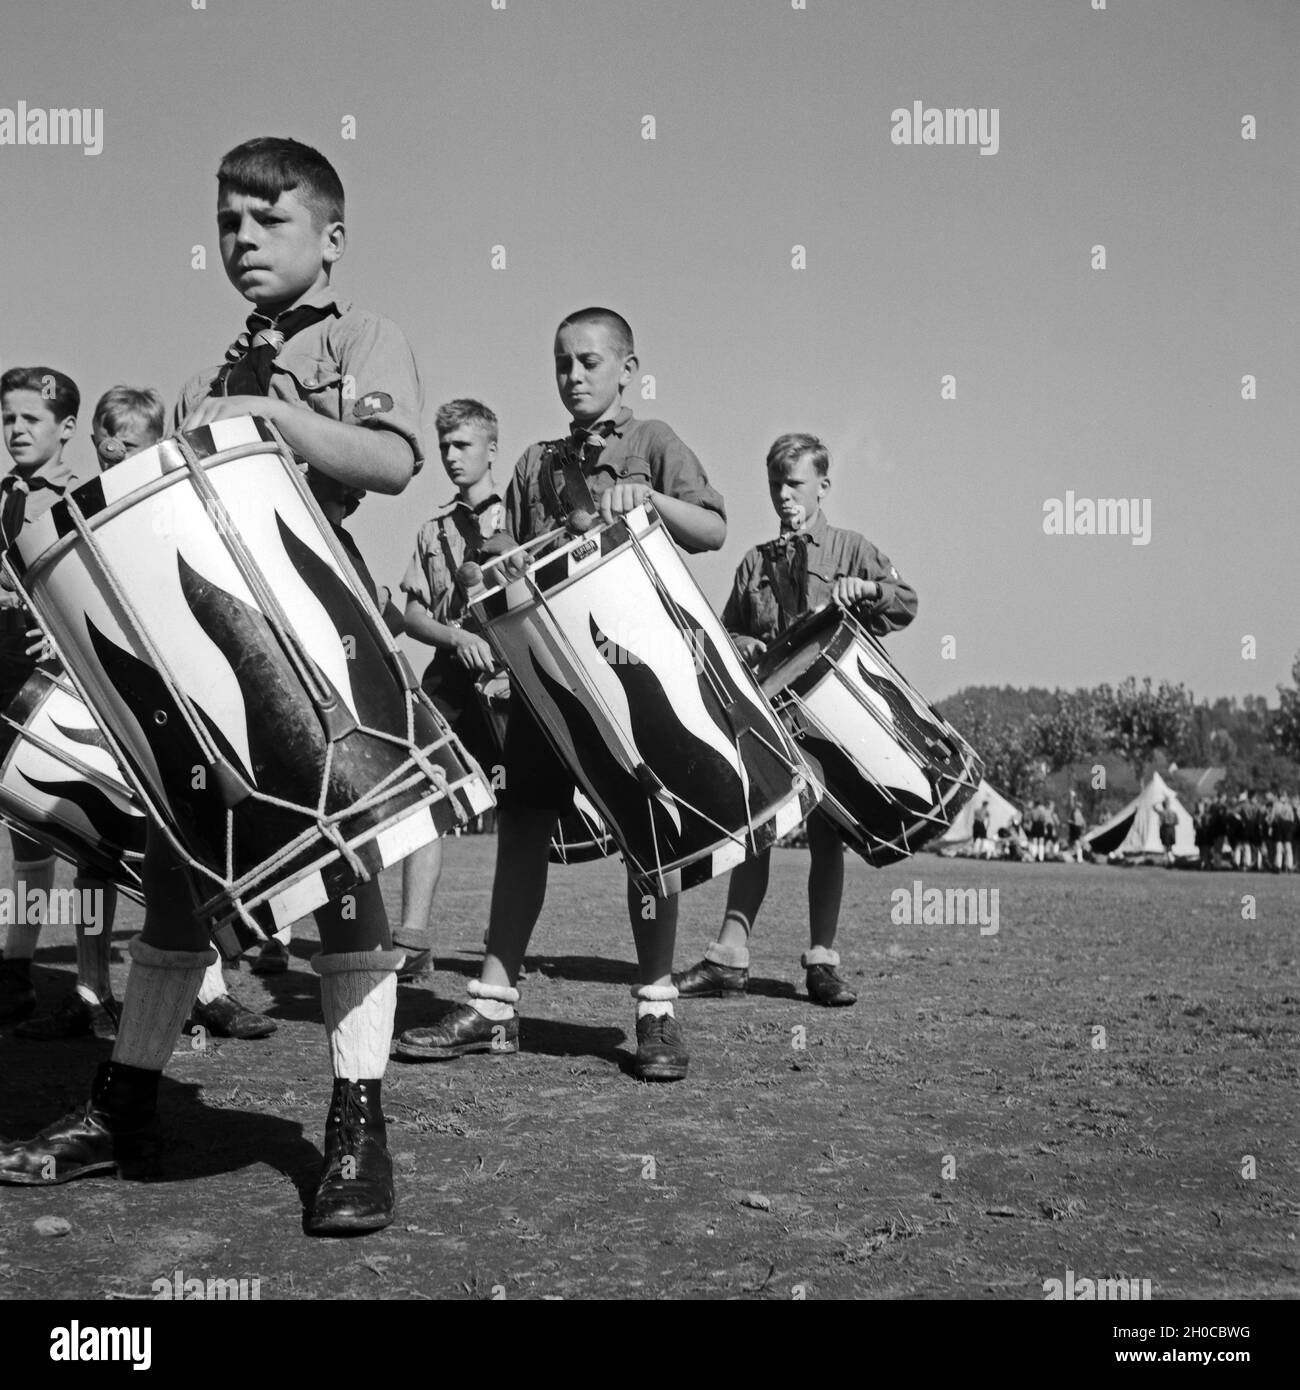 Jungen des Tromnmlercorps des Jungvolk Musikzuges geben den Takt Hitlerjugend im Lager, Österreich 1930er Jahre. Il batterista dei boys Jungvolk battendo i tamburi raduno a Hitler youth camp, Austria 1930s. Foto Stock